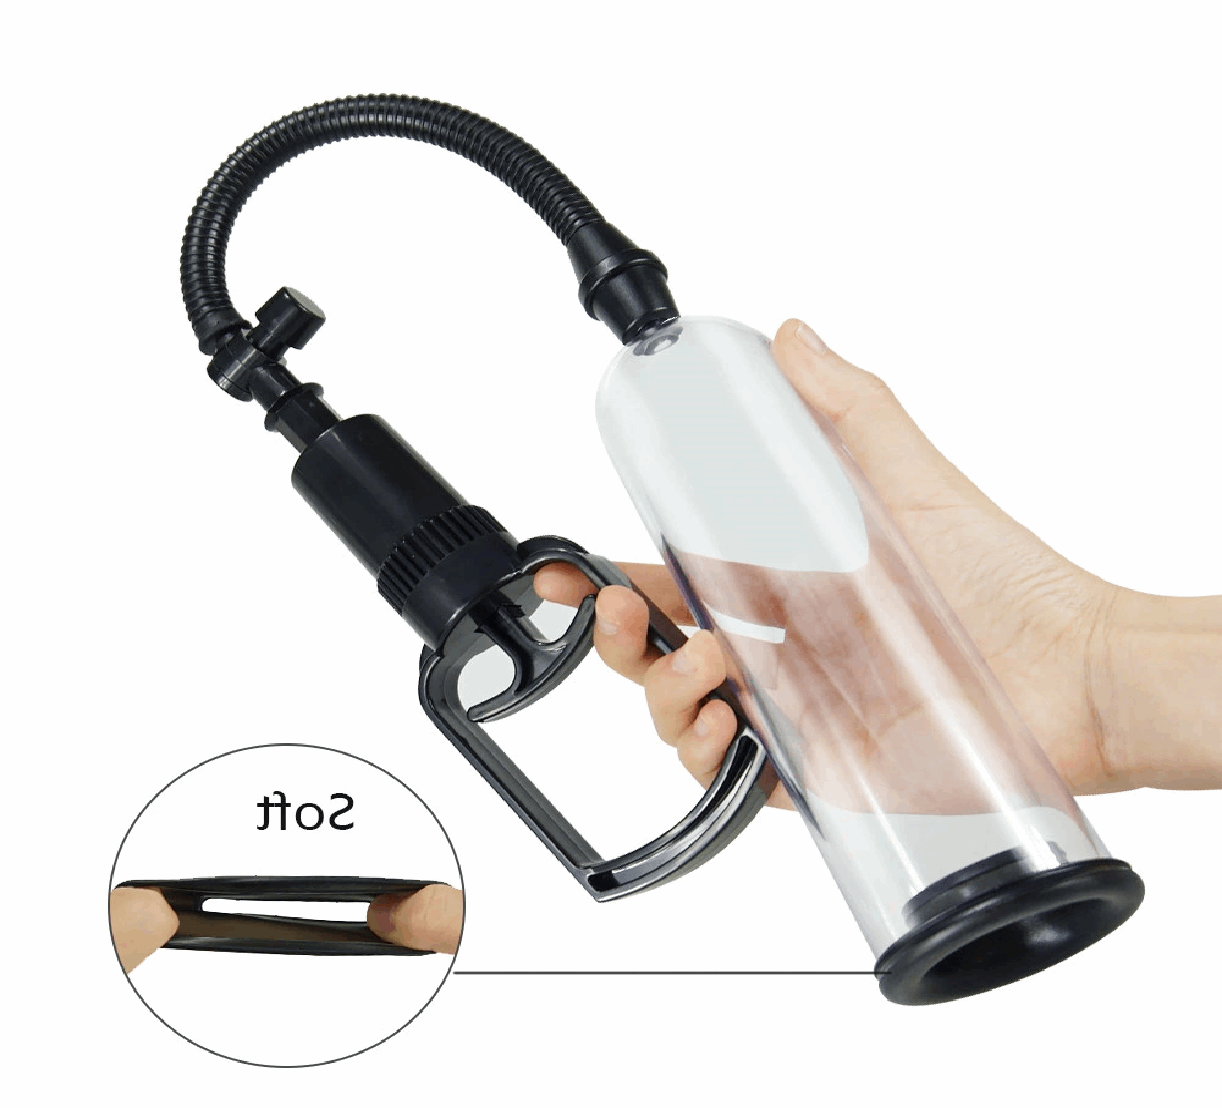 Manual Vacuum Enlargement Pump With Handal Pump For Men hiloramart.com